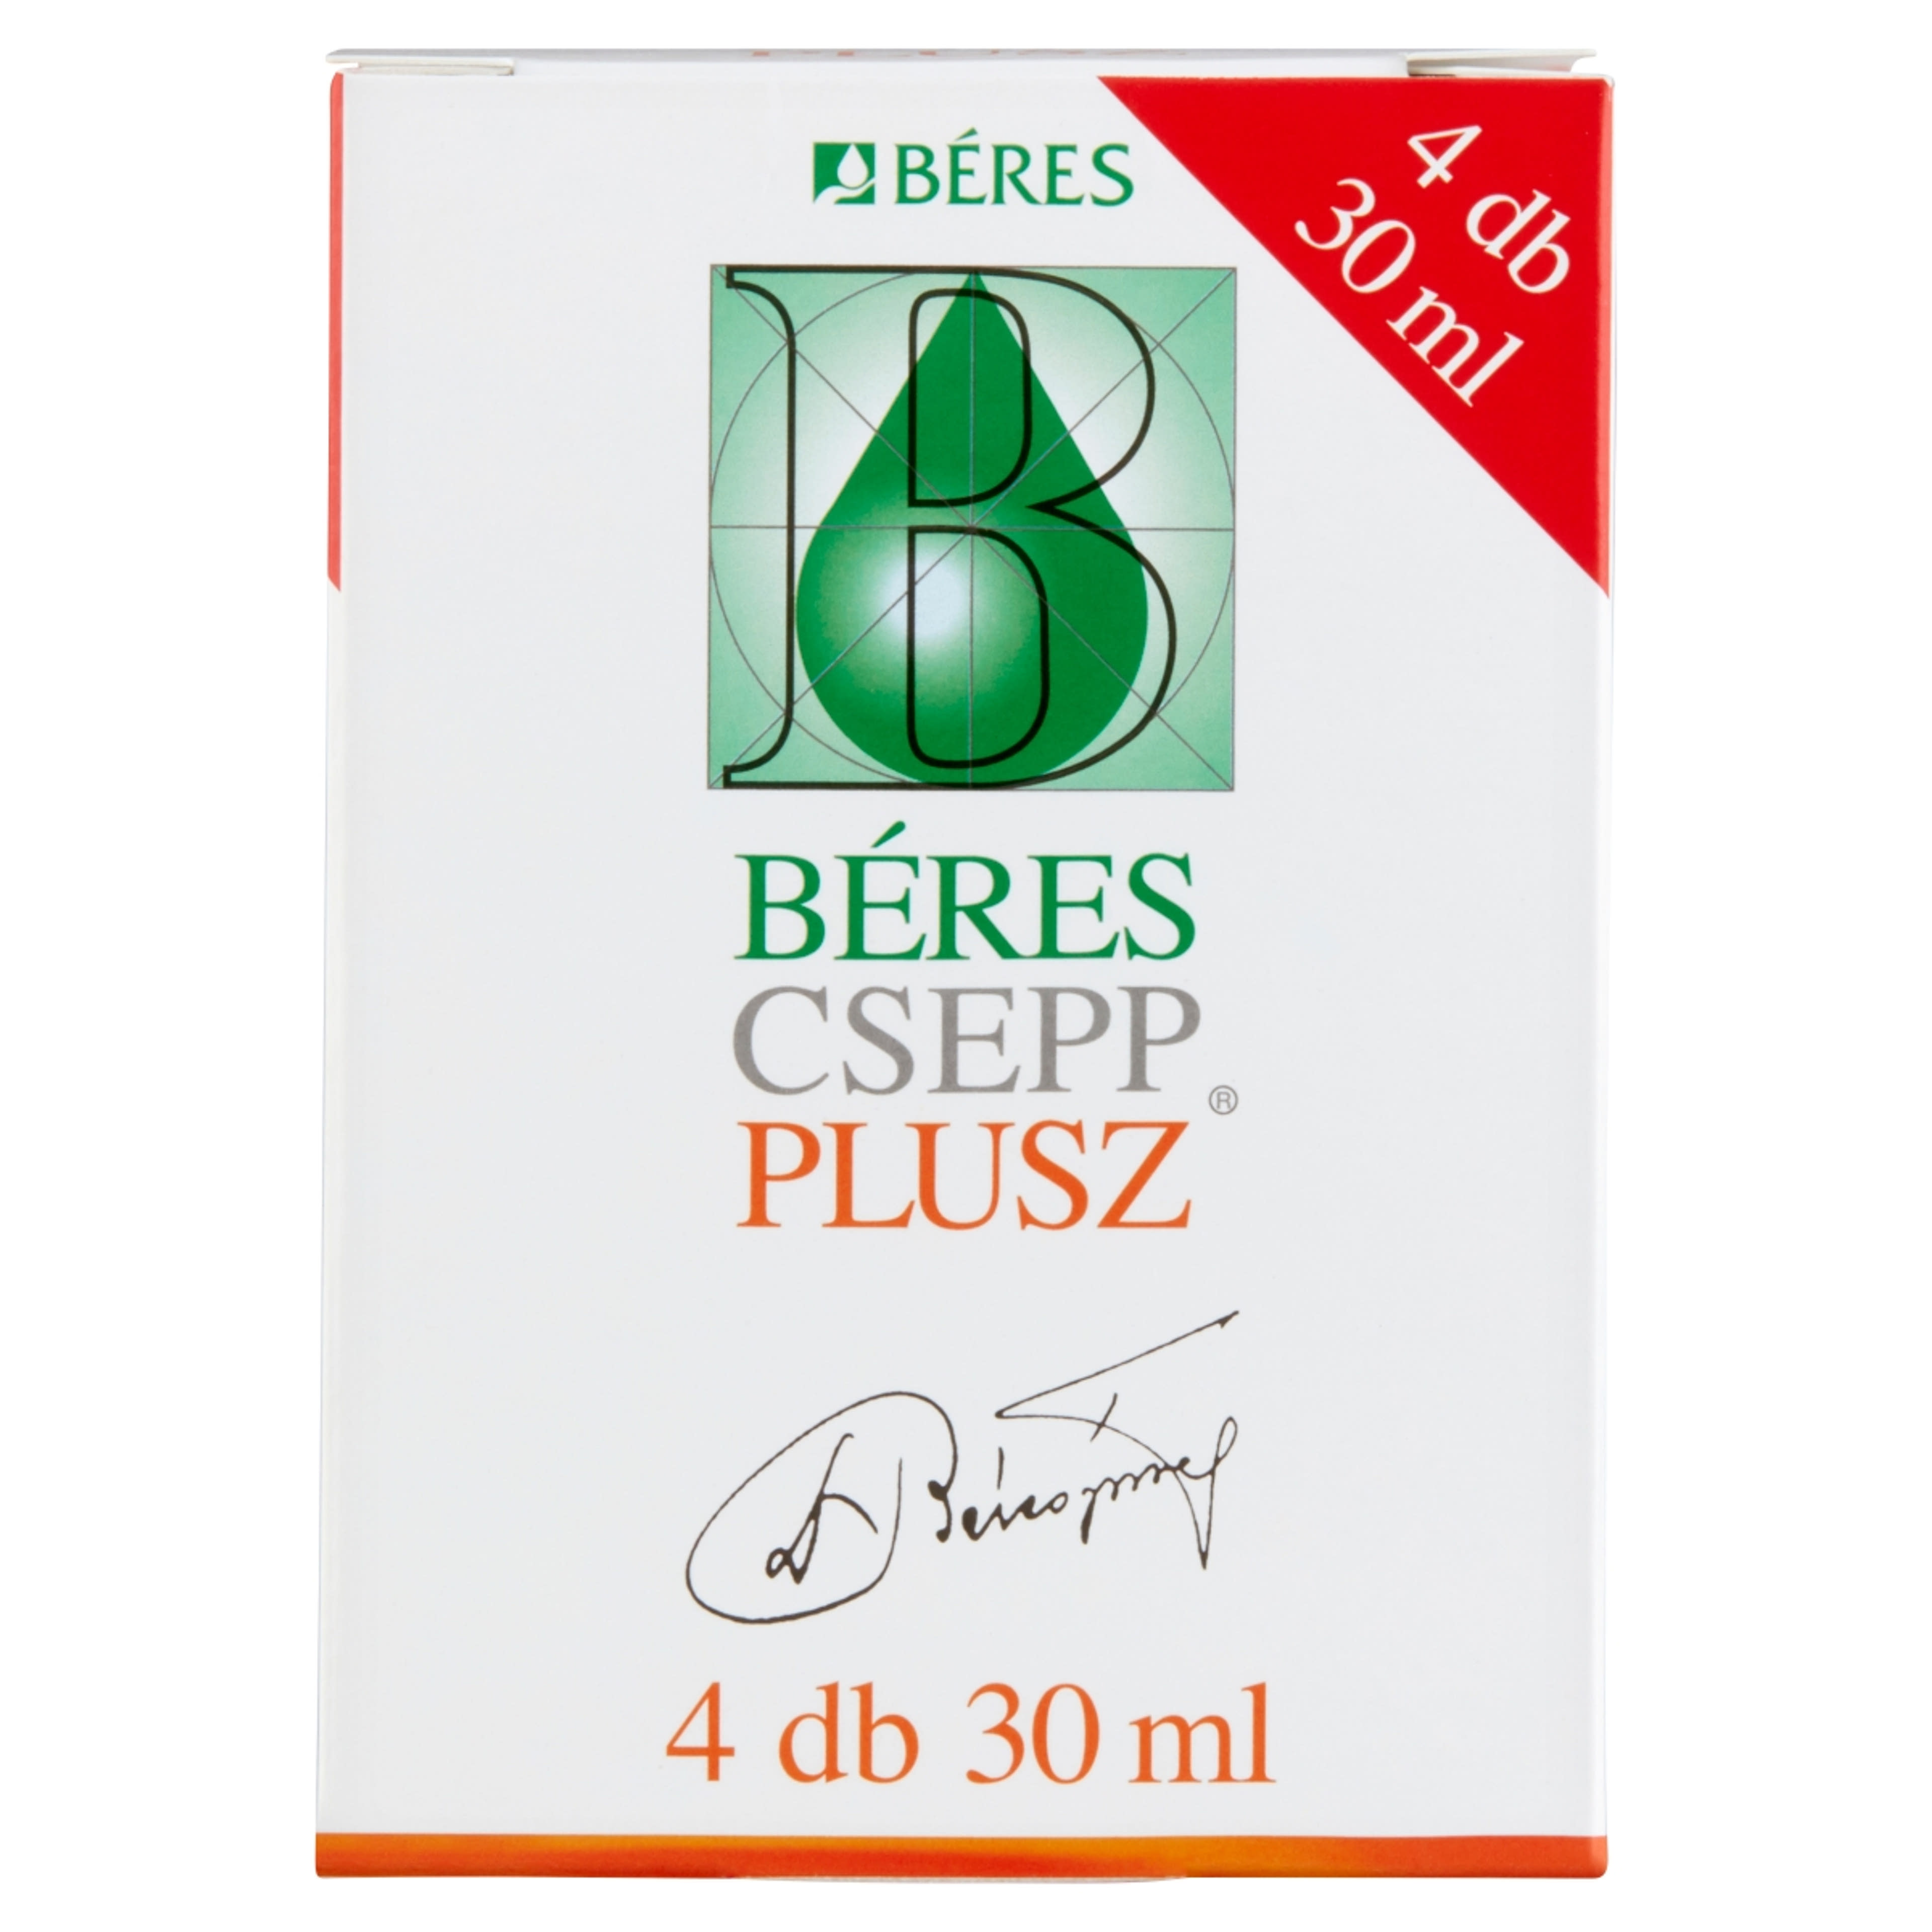 Béres Csepp Plusz (4*30 ml) - 120ml